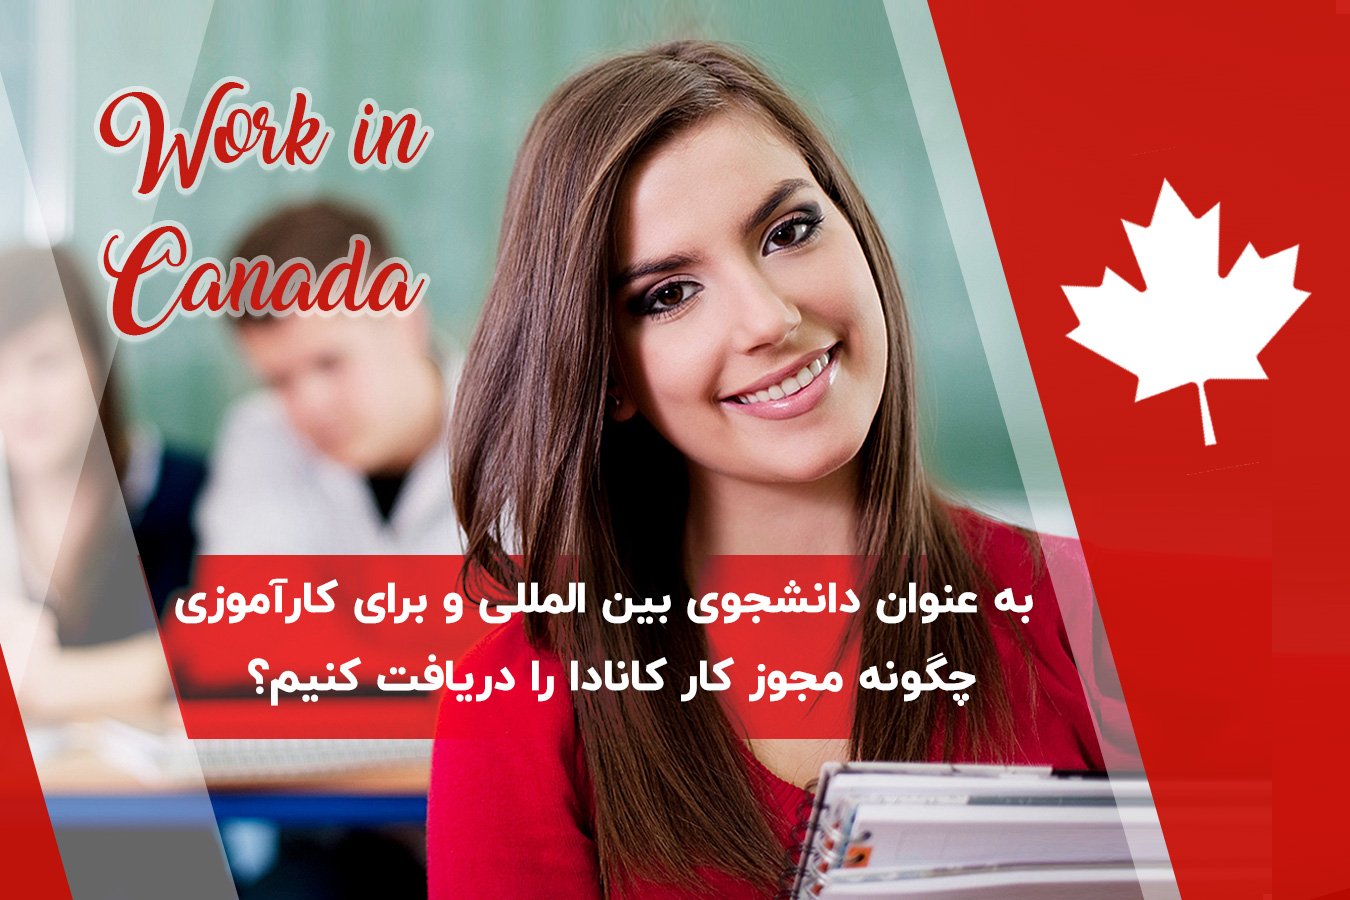 به عنوان دانشجوی بین المللی و برای کارآموزی چگونه مجوز کار کانادا (co-op) را دریافت کنیم؟